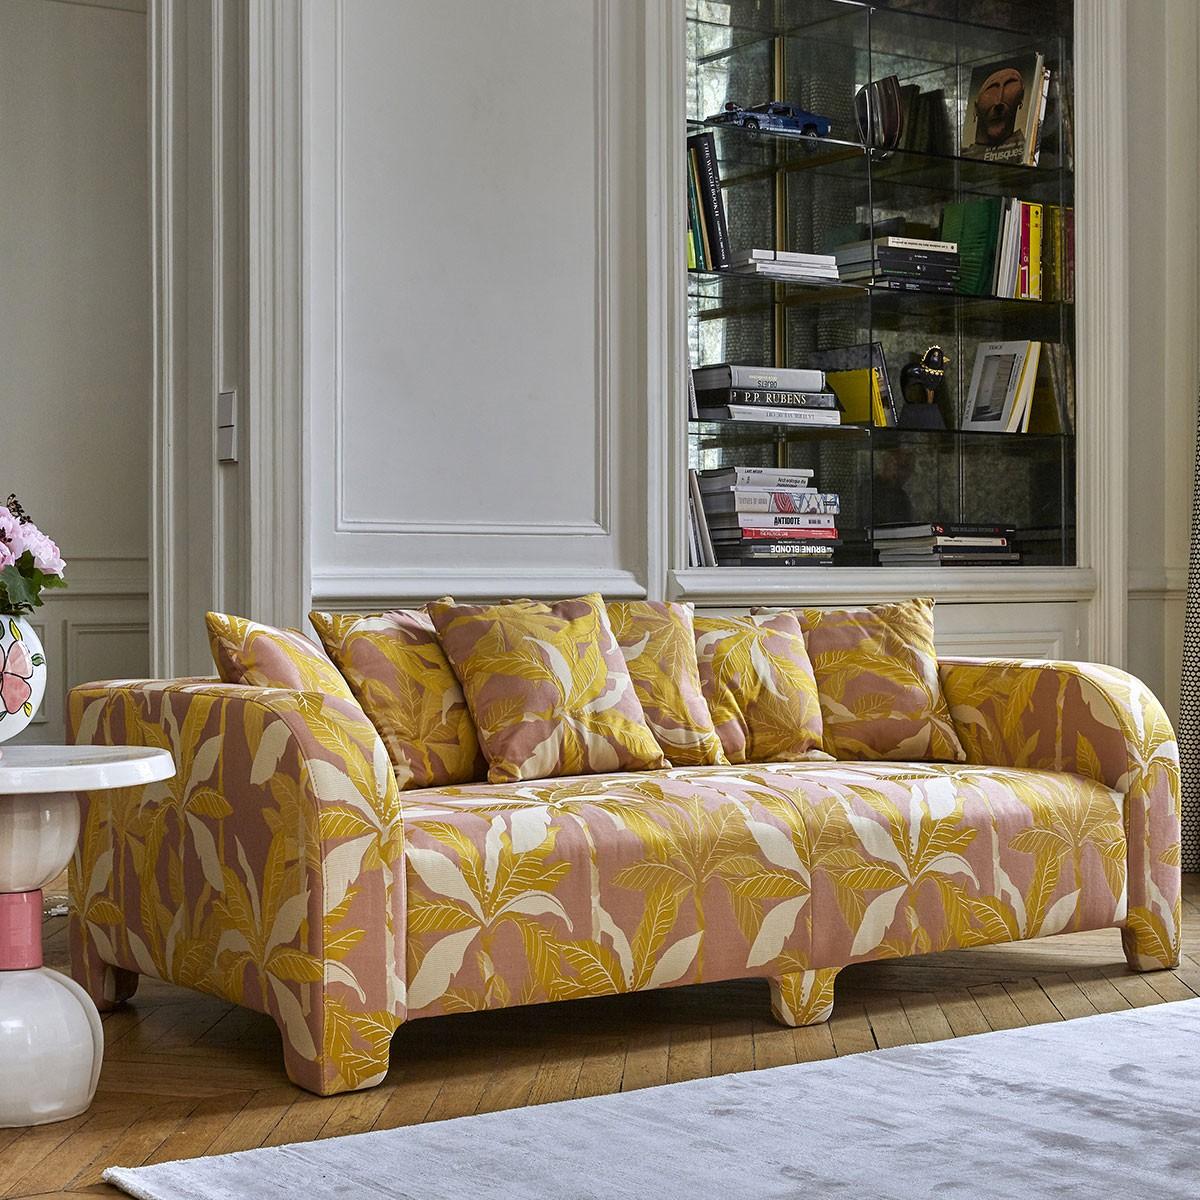 Popus Editions Graziella 3 Seater Sofa in Duna Venice Chenille Velvet Fabric In New Condition For Sale In Paris, FR